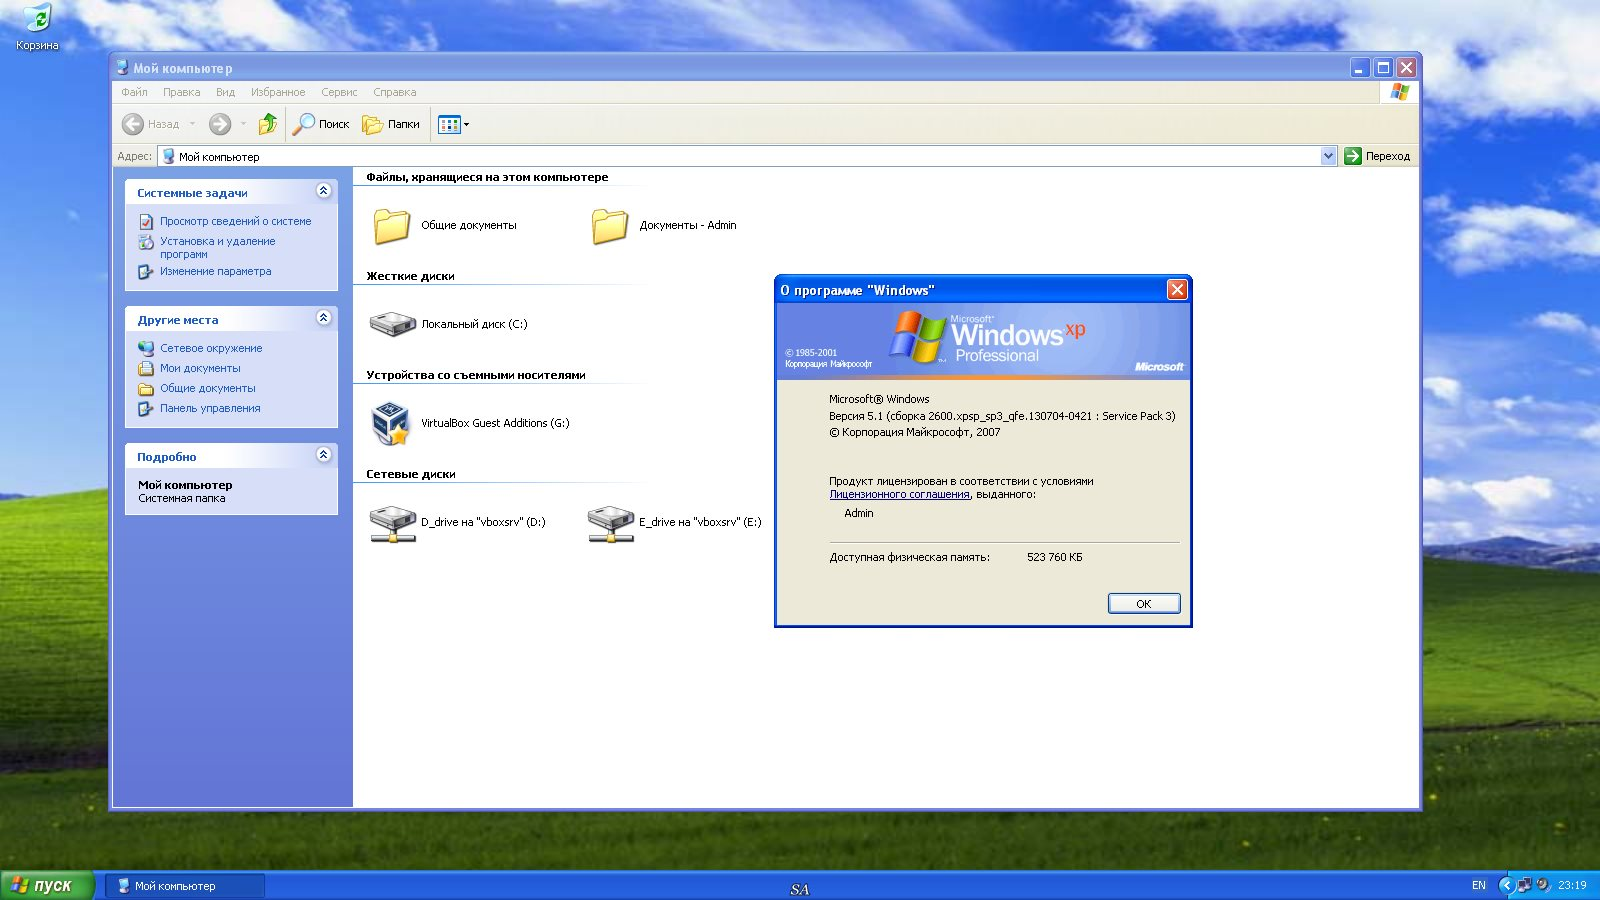 Сайт старых виндовс. Виндовс хр Интерфейс. ОС виндовс хр. Пользовательский Интерфейс виндовс хр. Окно Windows XP.